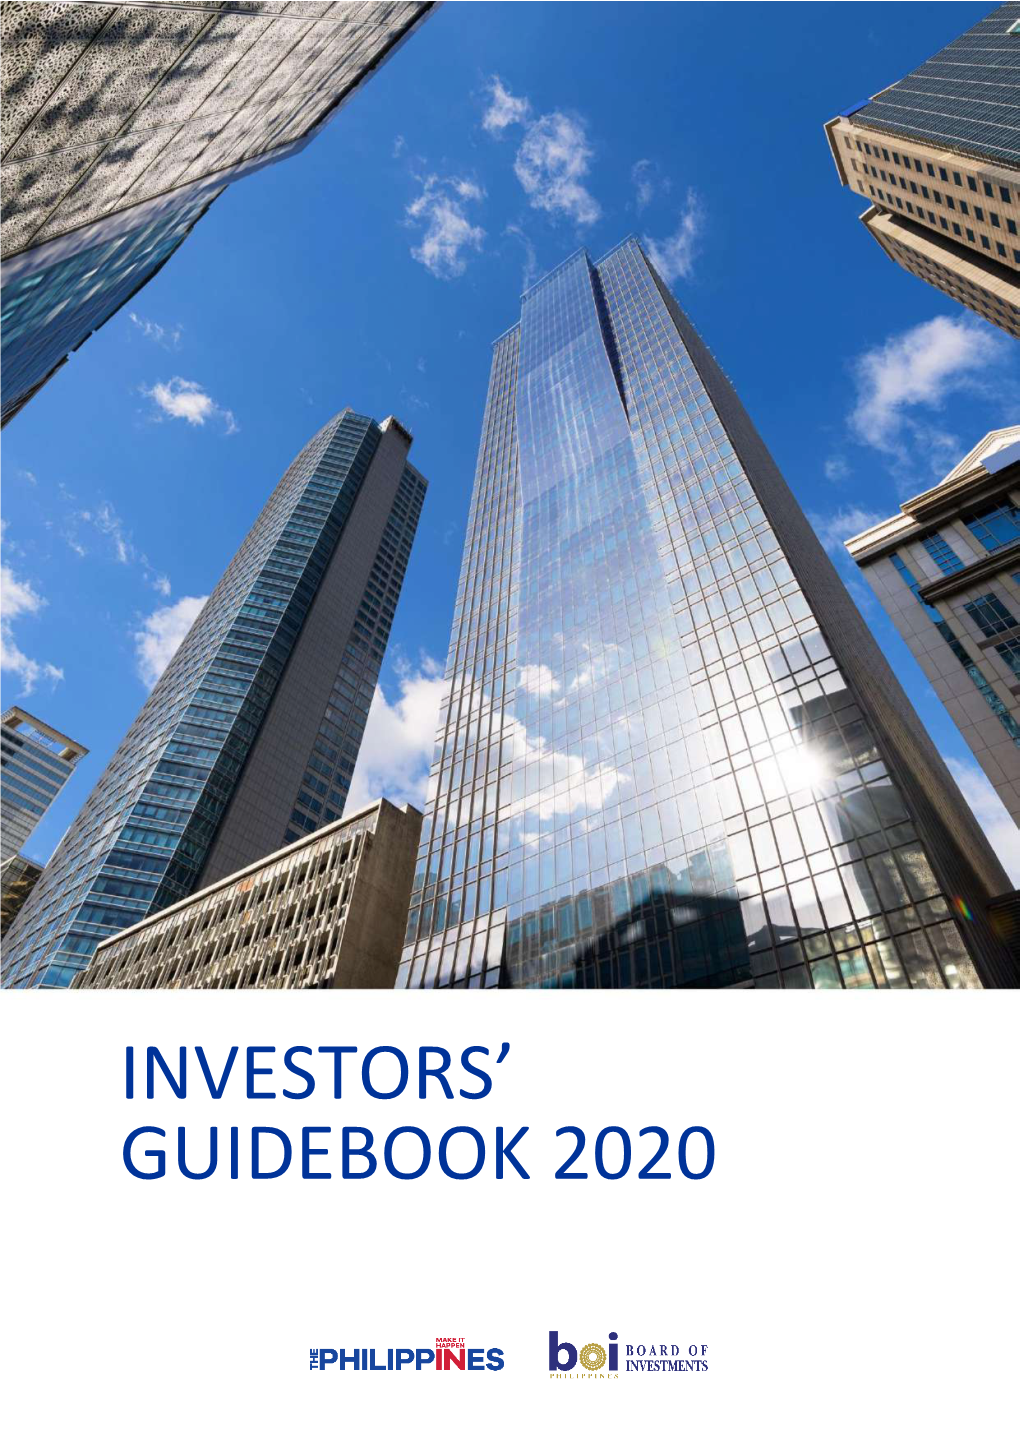 Investors' Guidebook 2020